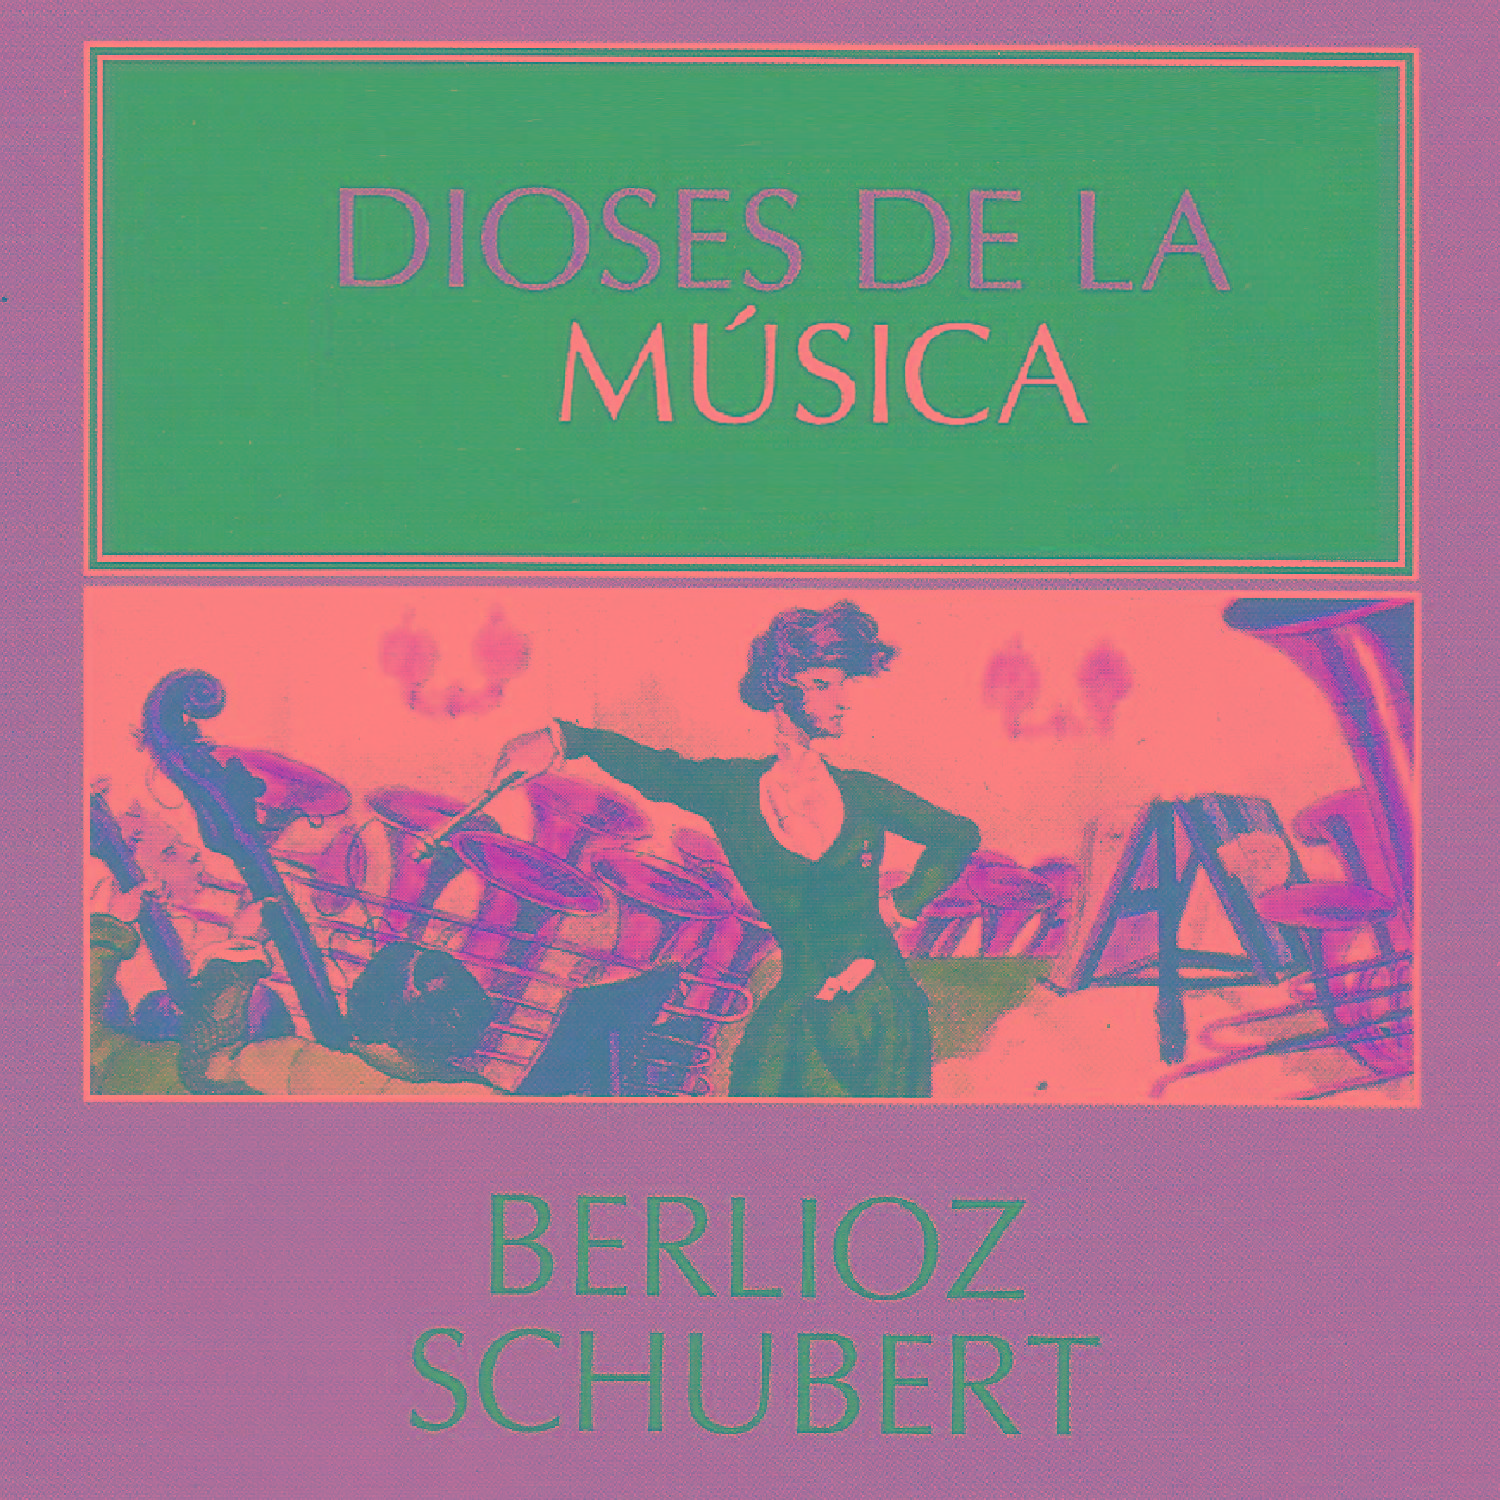 Dioses de la Mu sica  Berlioz, Schubert